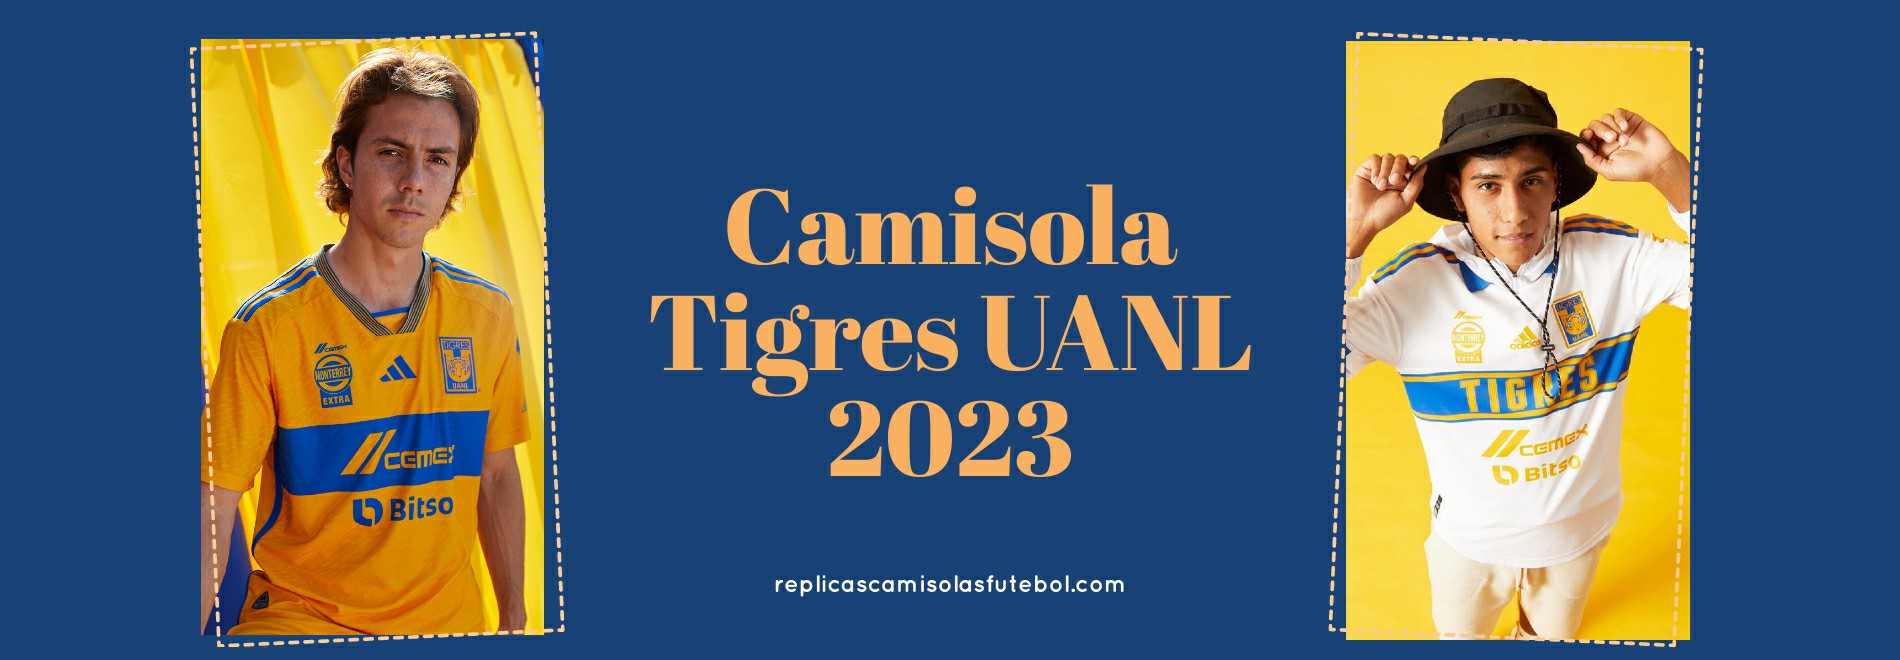 Camisola Tigres UANL 2023-2024